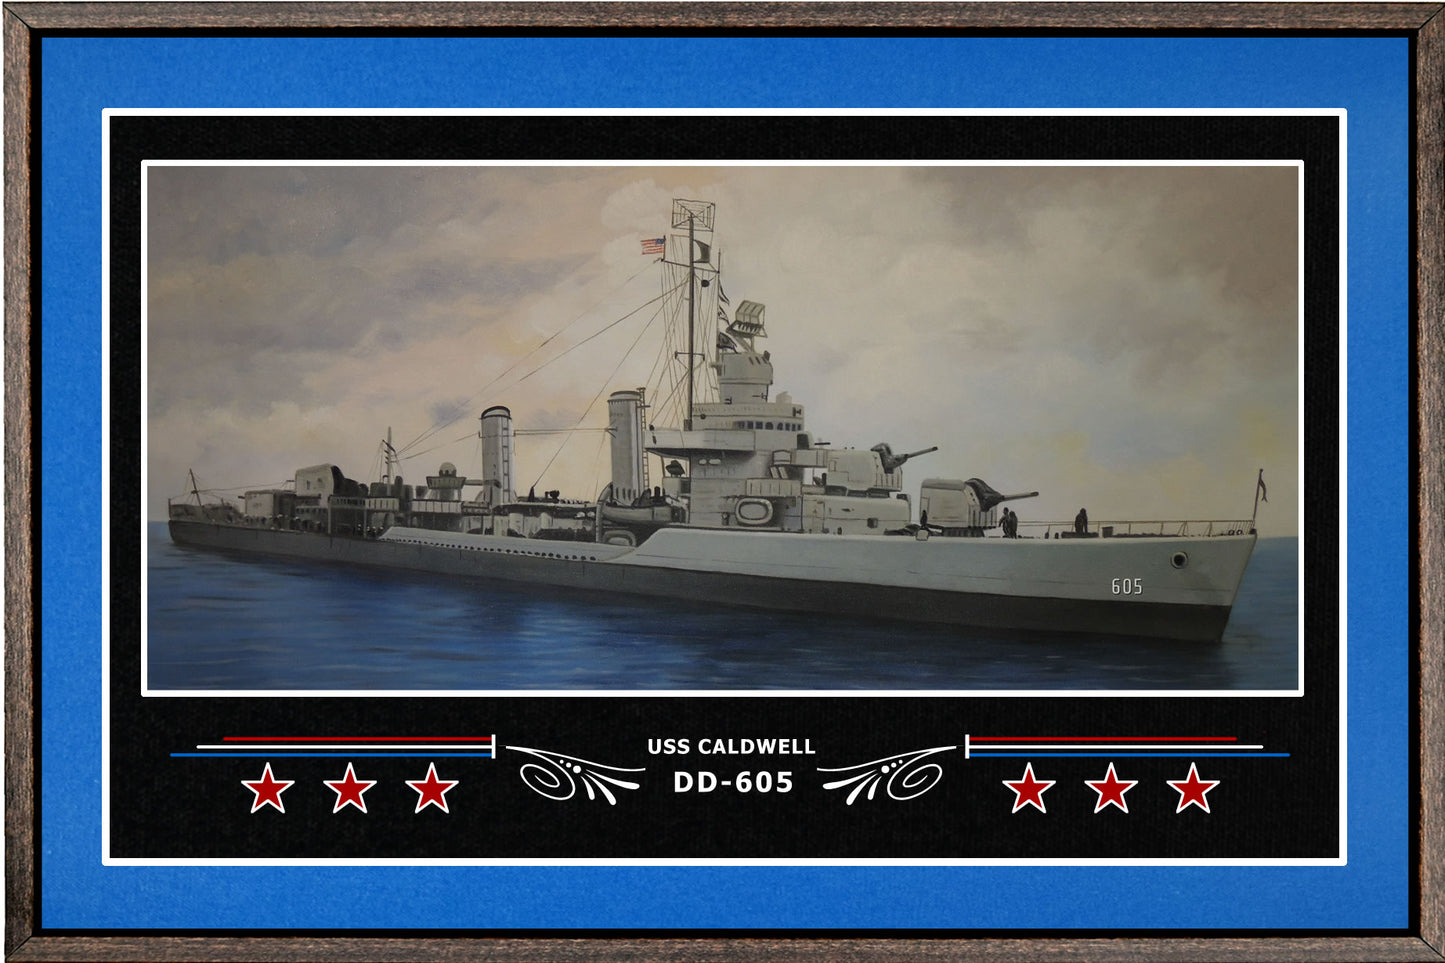 USS CALDWELL DD 605 BOX FRAMED CANVAS ART BLUE